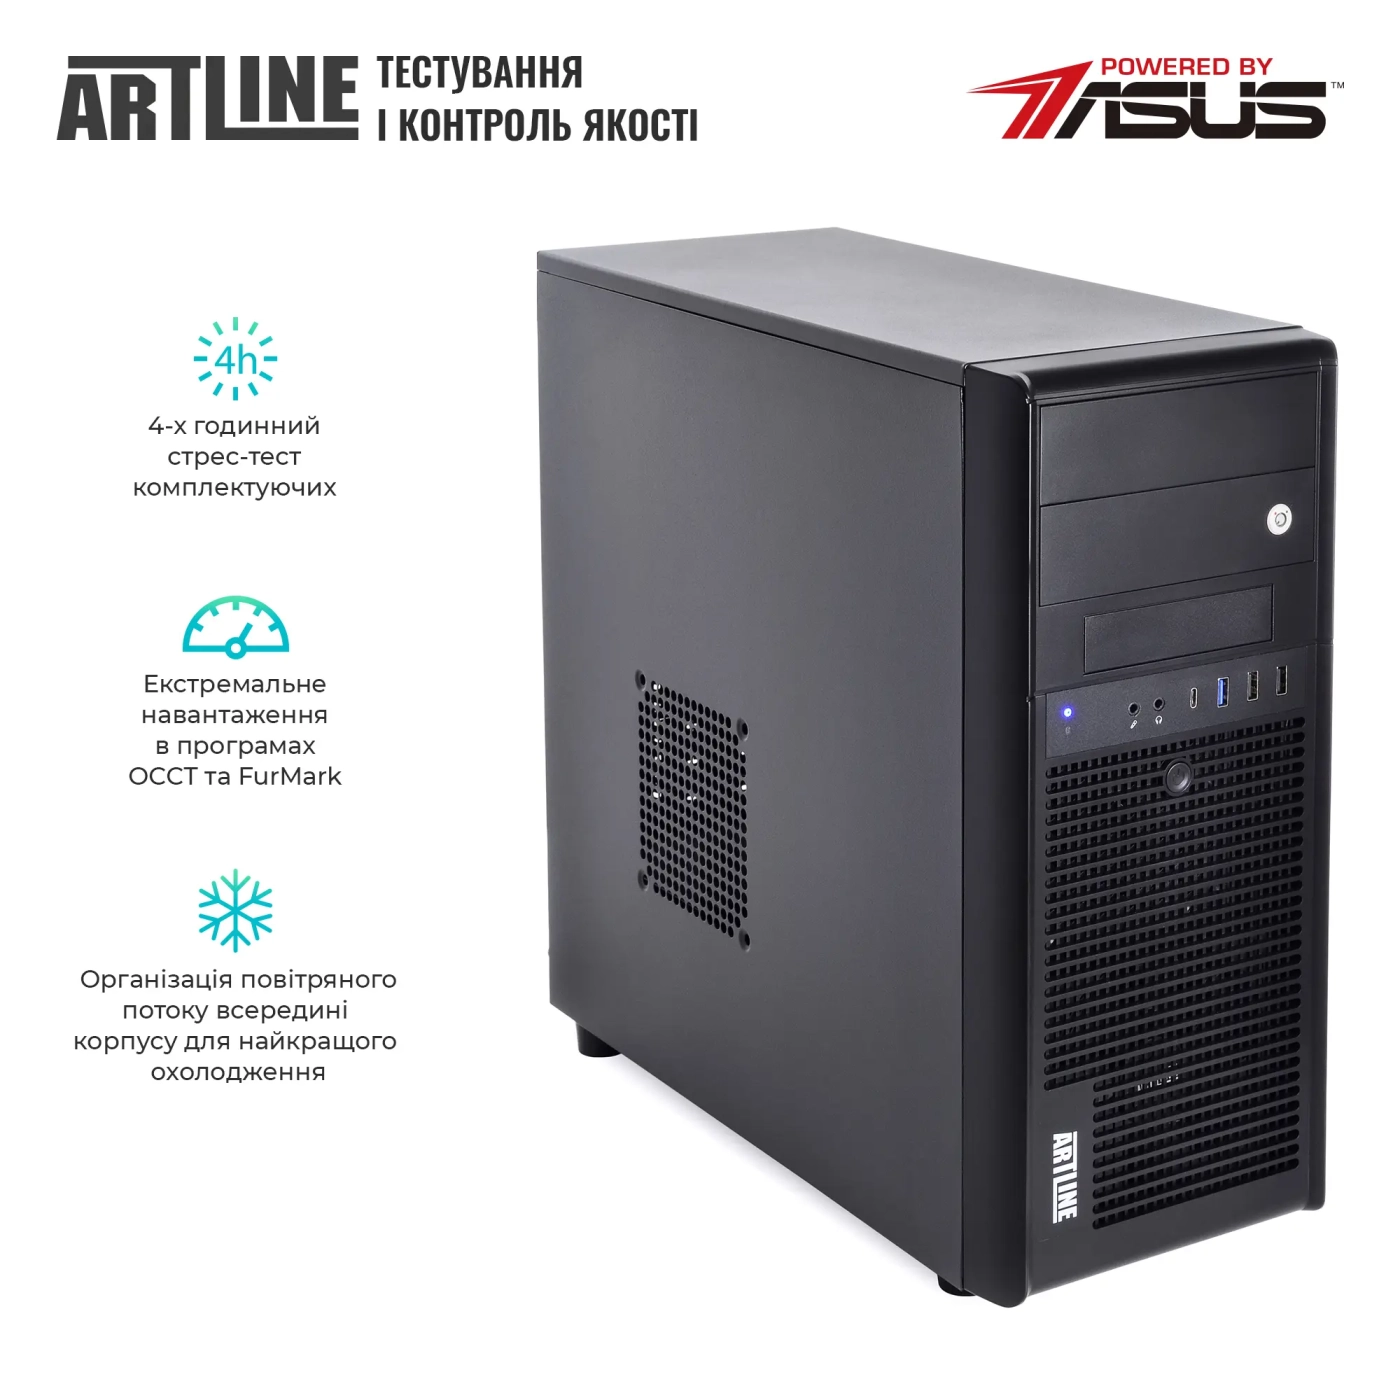 Купить Сервер ARTLINE Business T37 (T37v33) - фото 7